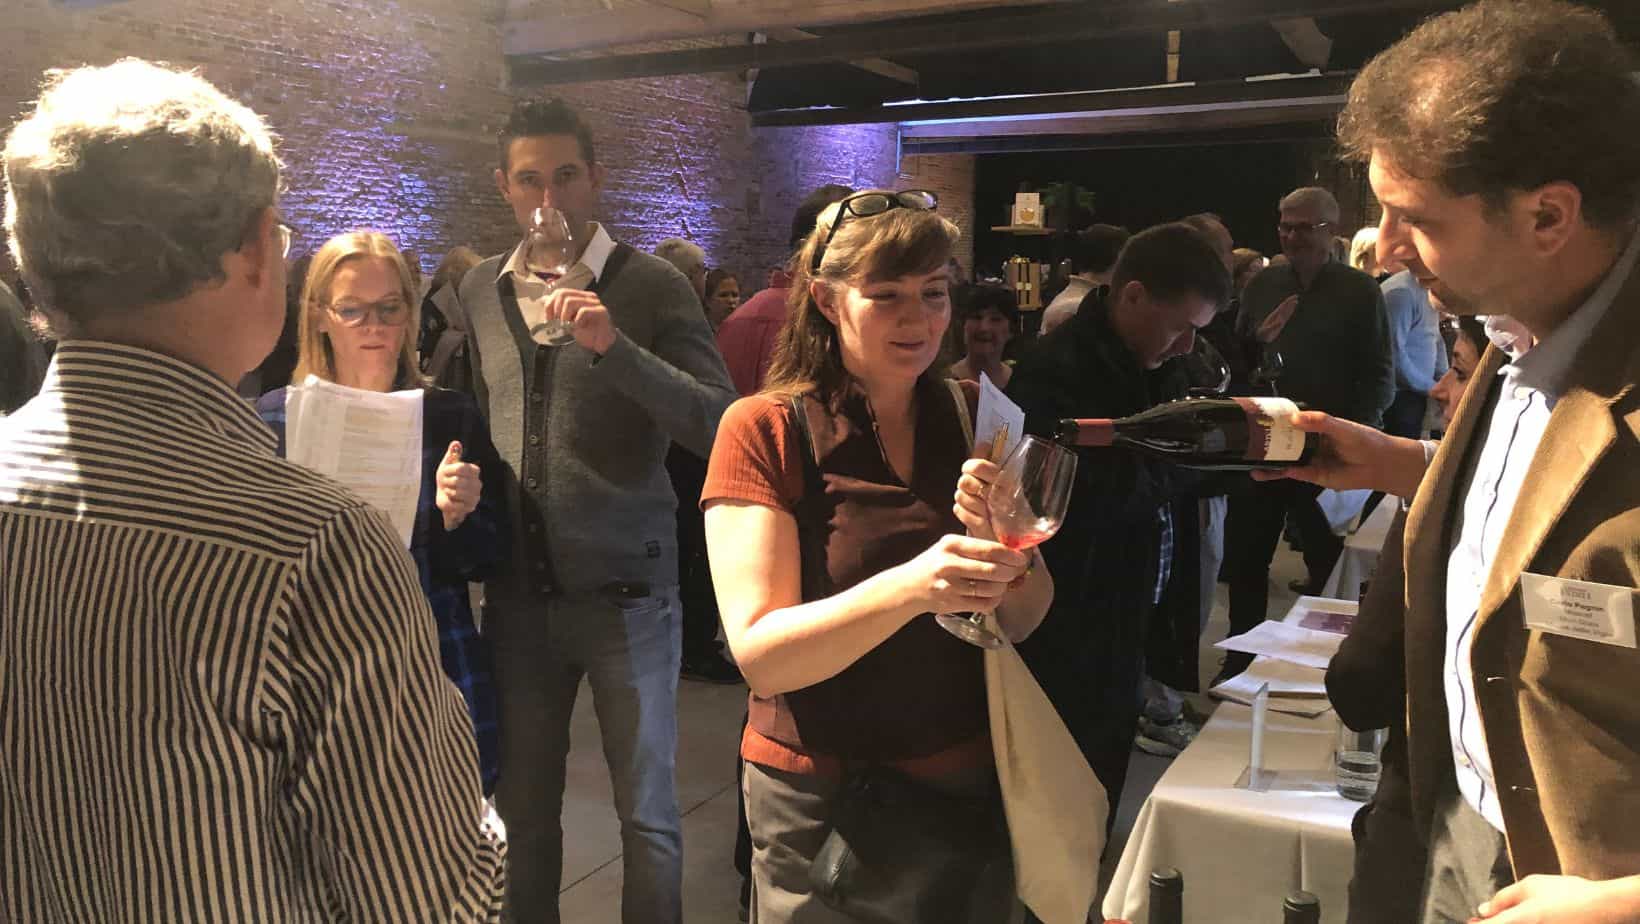 Alto Adige Muri-Gries at the tasting event in Belgium.